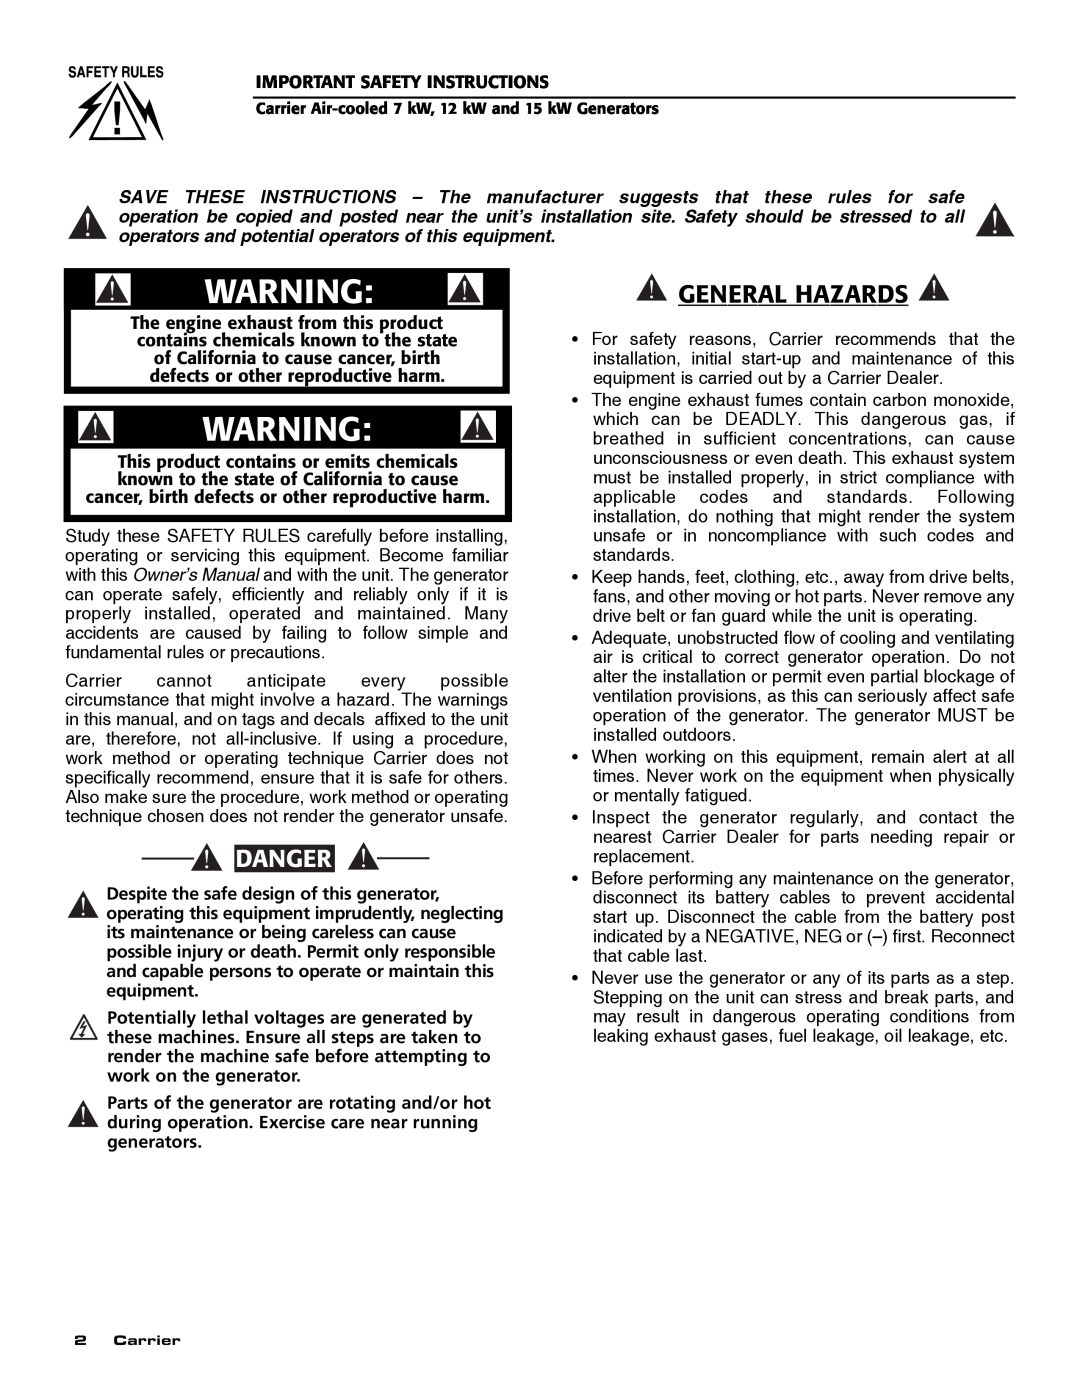 Carrier ASPAS1CCA007 owner manual General Hazards, Danger 